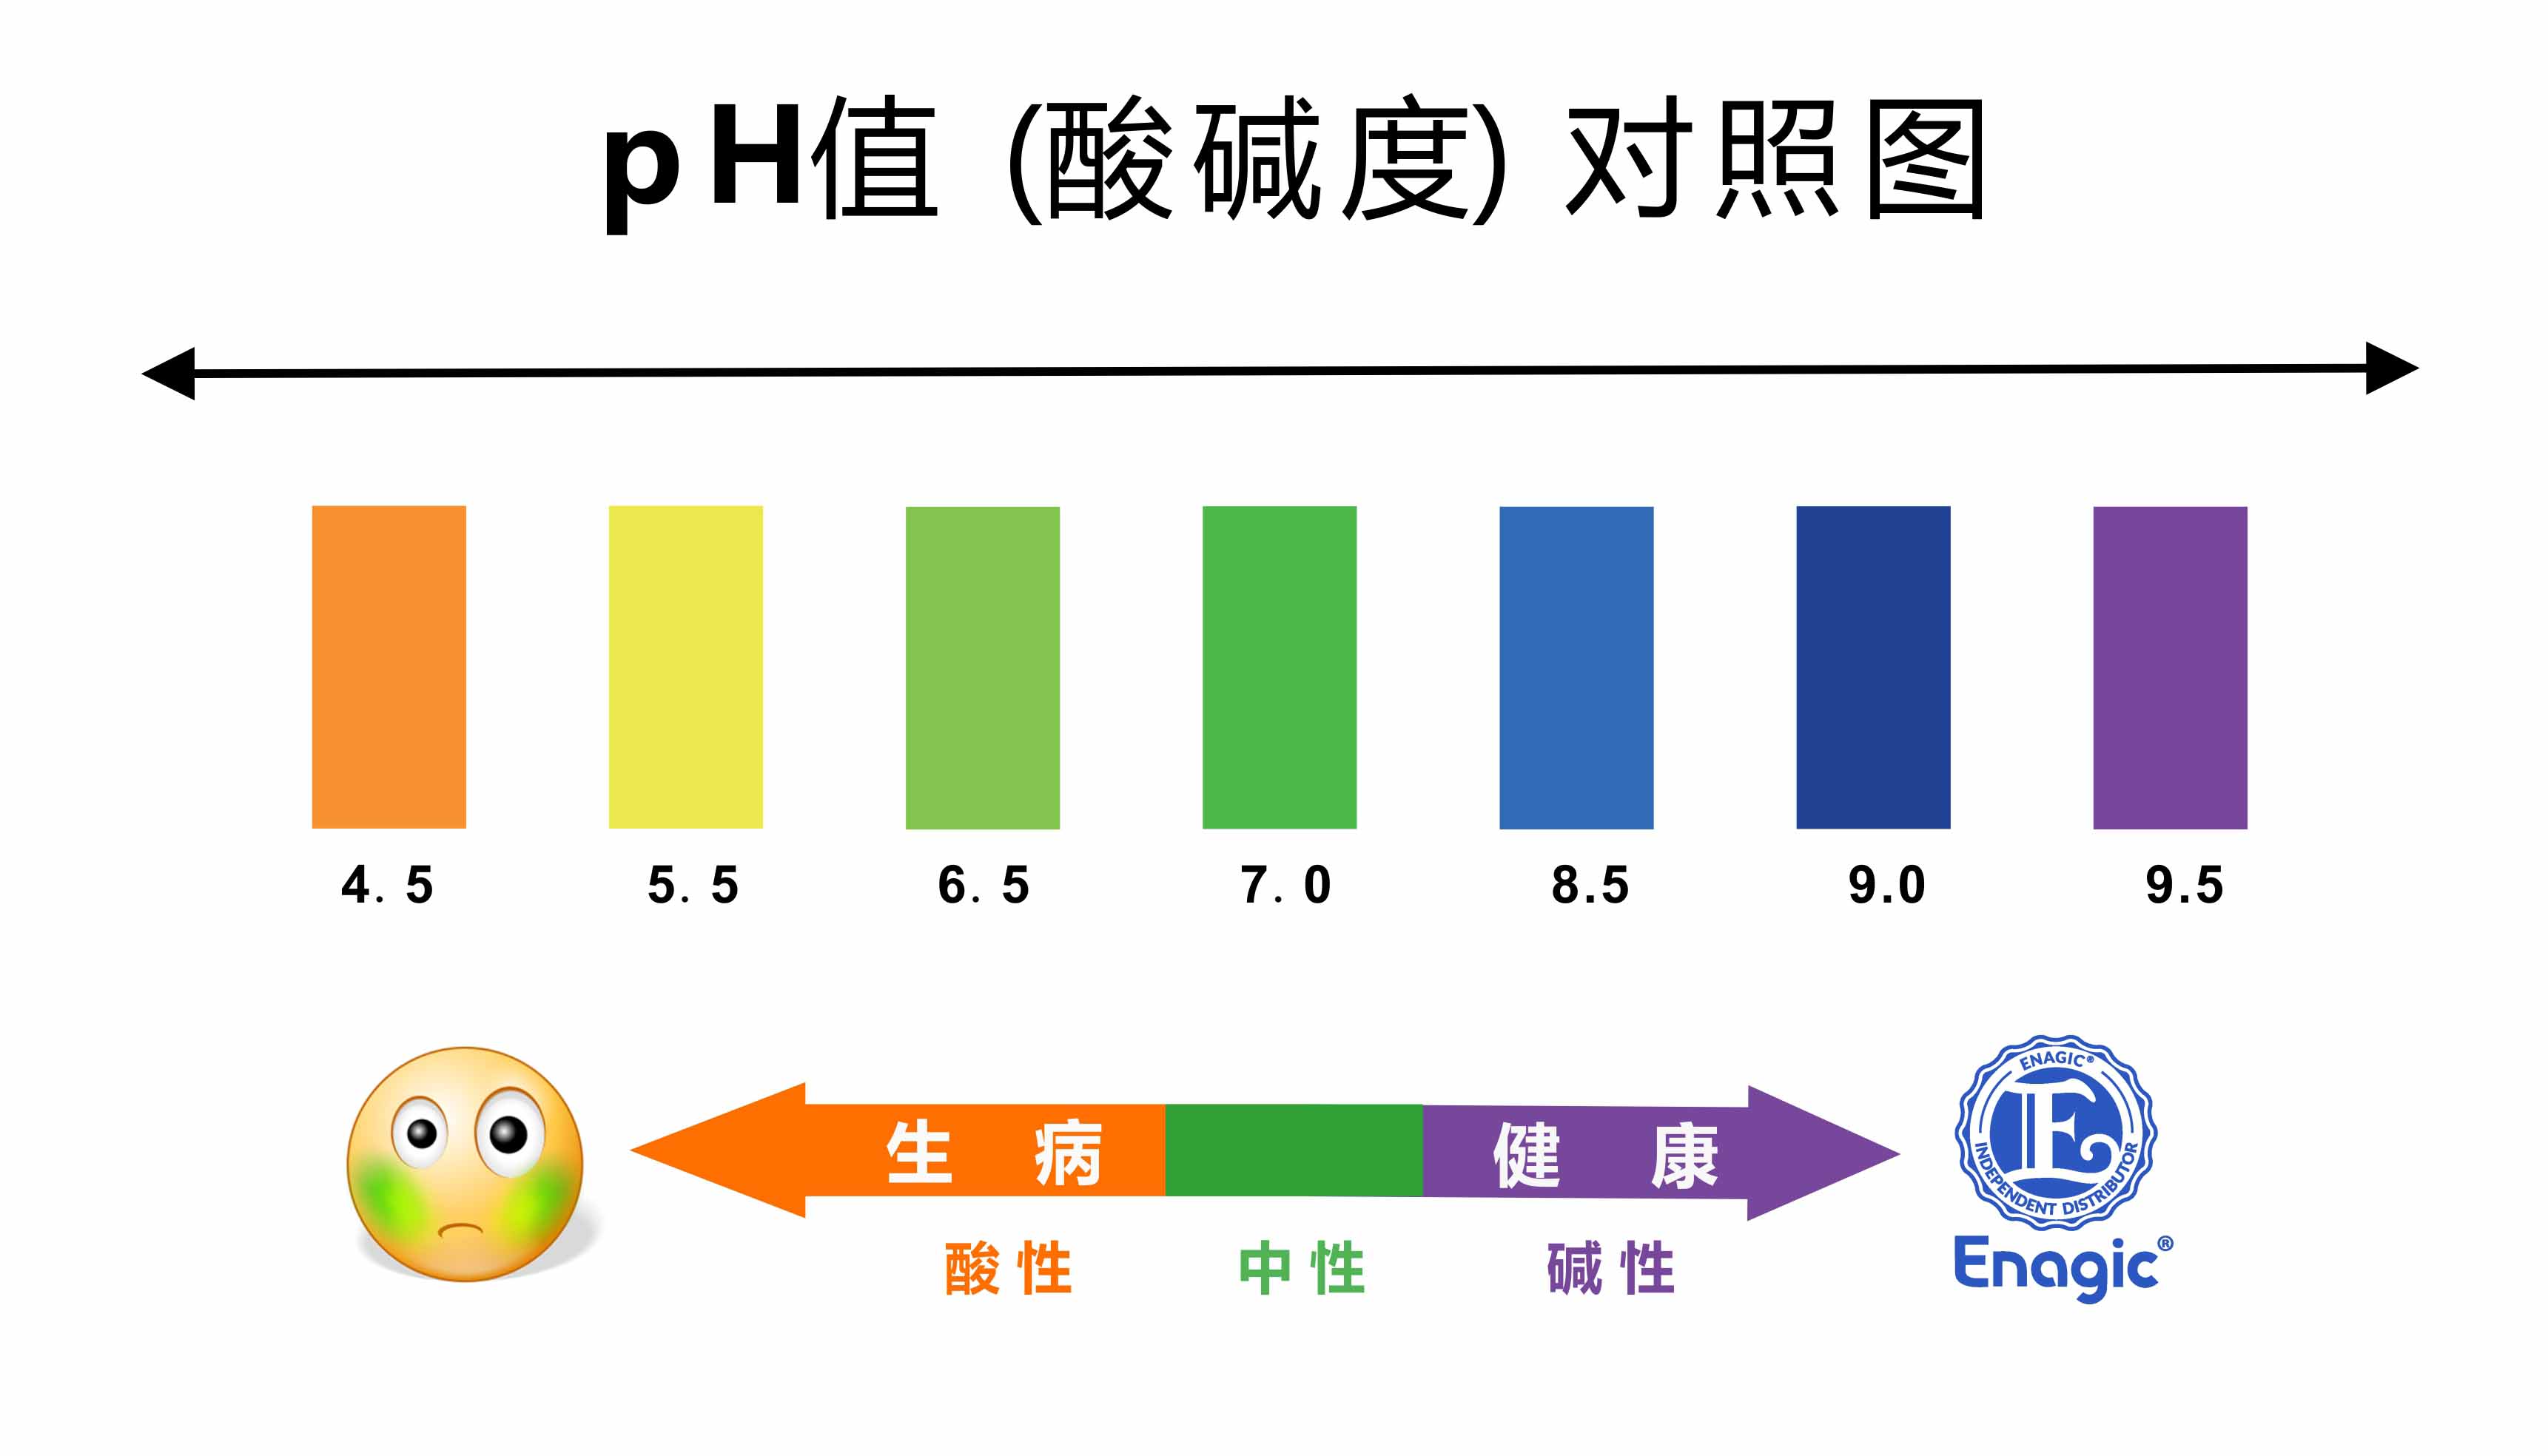 酸碱度ph值对照表颜色图片